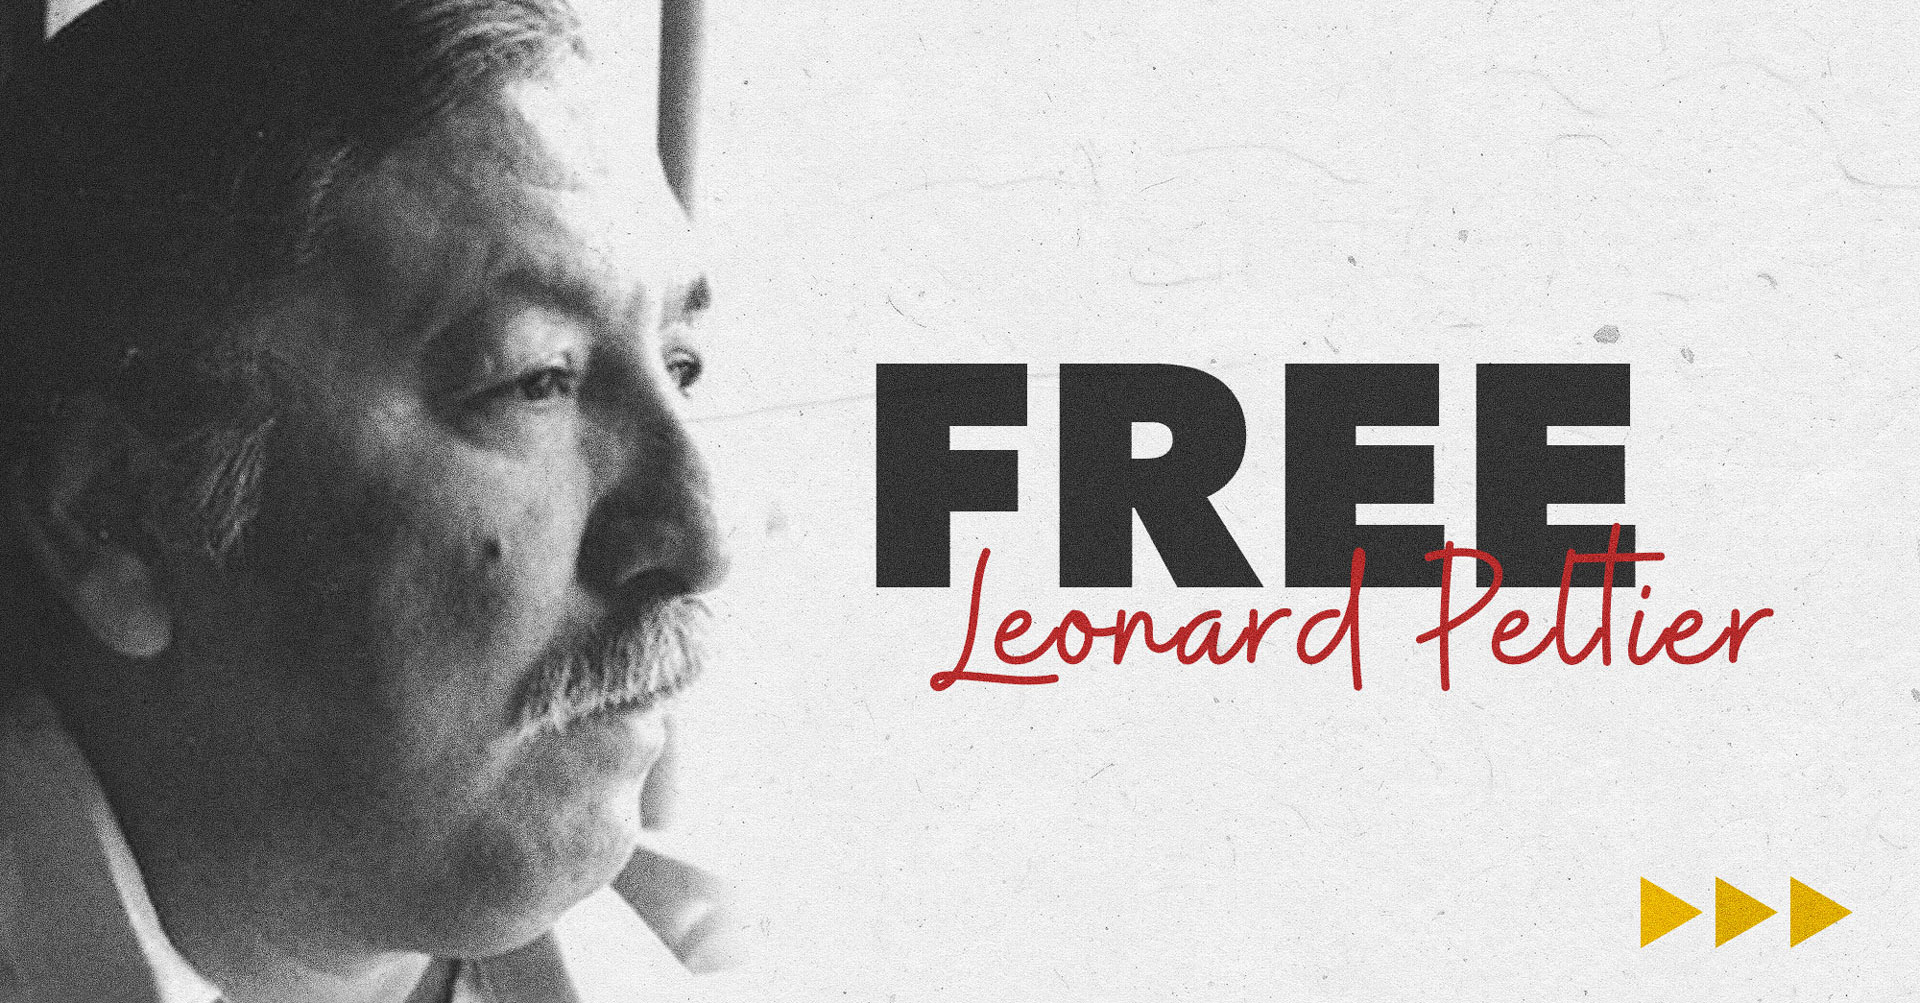 Liberación compasiva para Leonard Peltier, ¡AHORA!